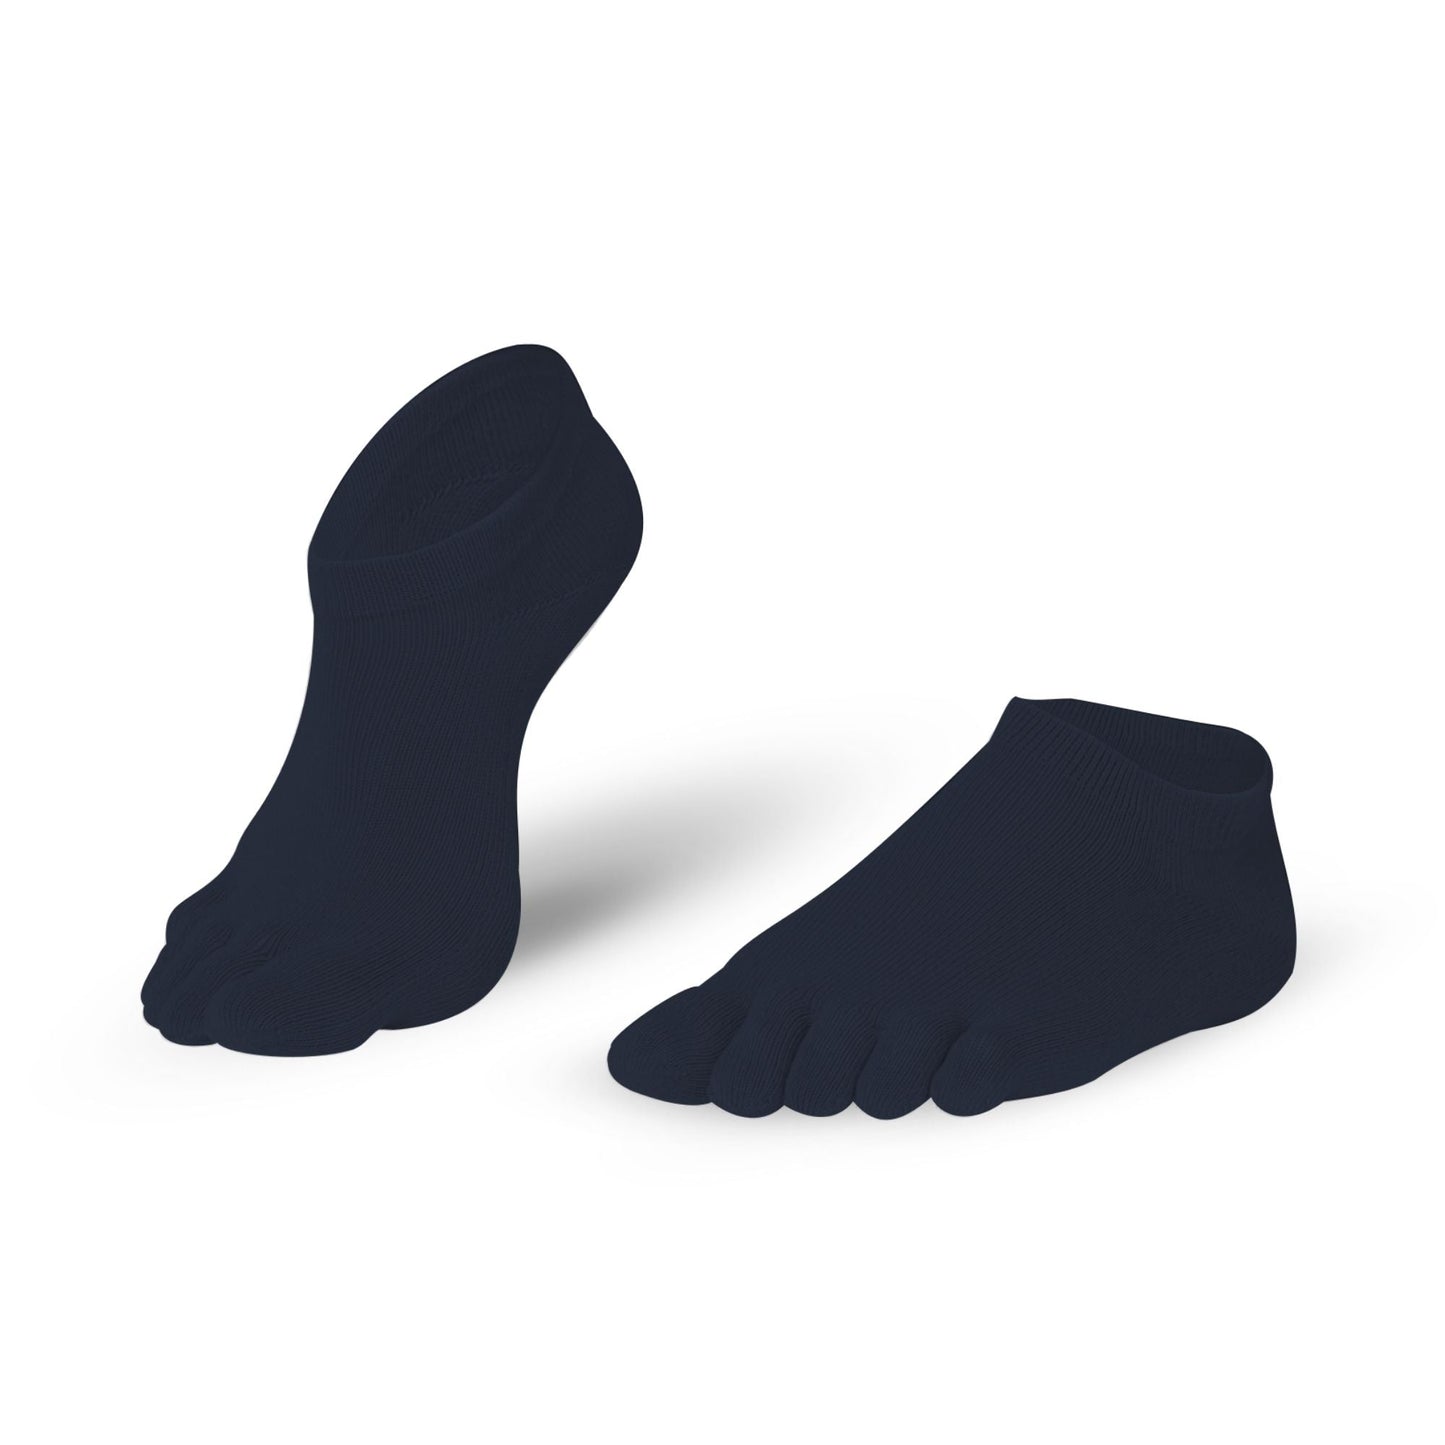 Knitido Essentials Sneaker barfods tåsokker til kvinder og mænd i farven black, par